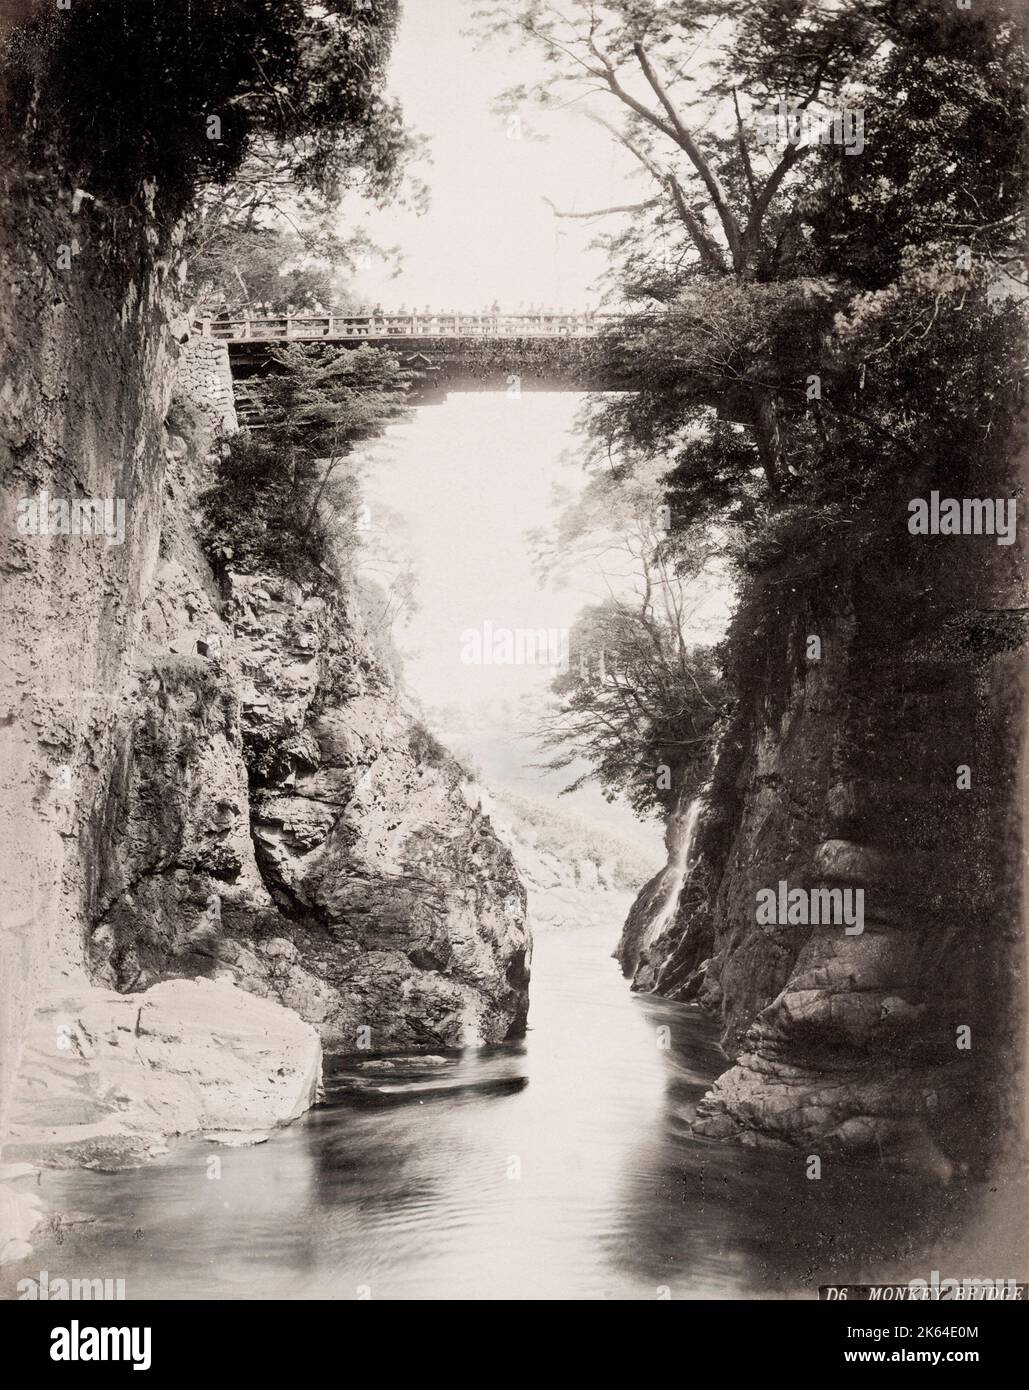 Vintage siglo 19 fotografía: Mono Puente, alto nivel puente de madera sobre un desfiladero, Japón. Foto de stock